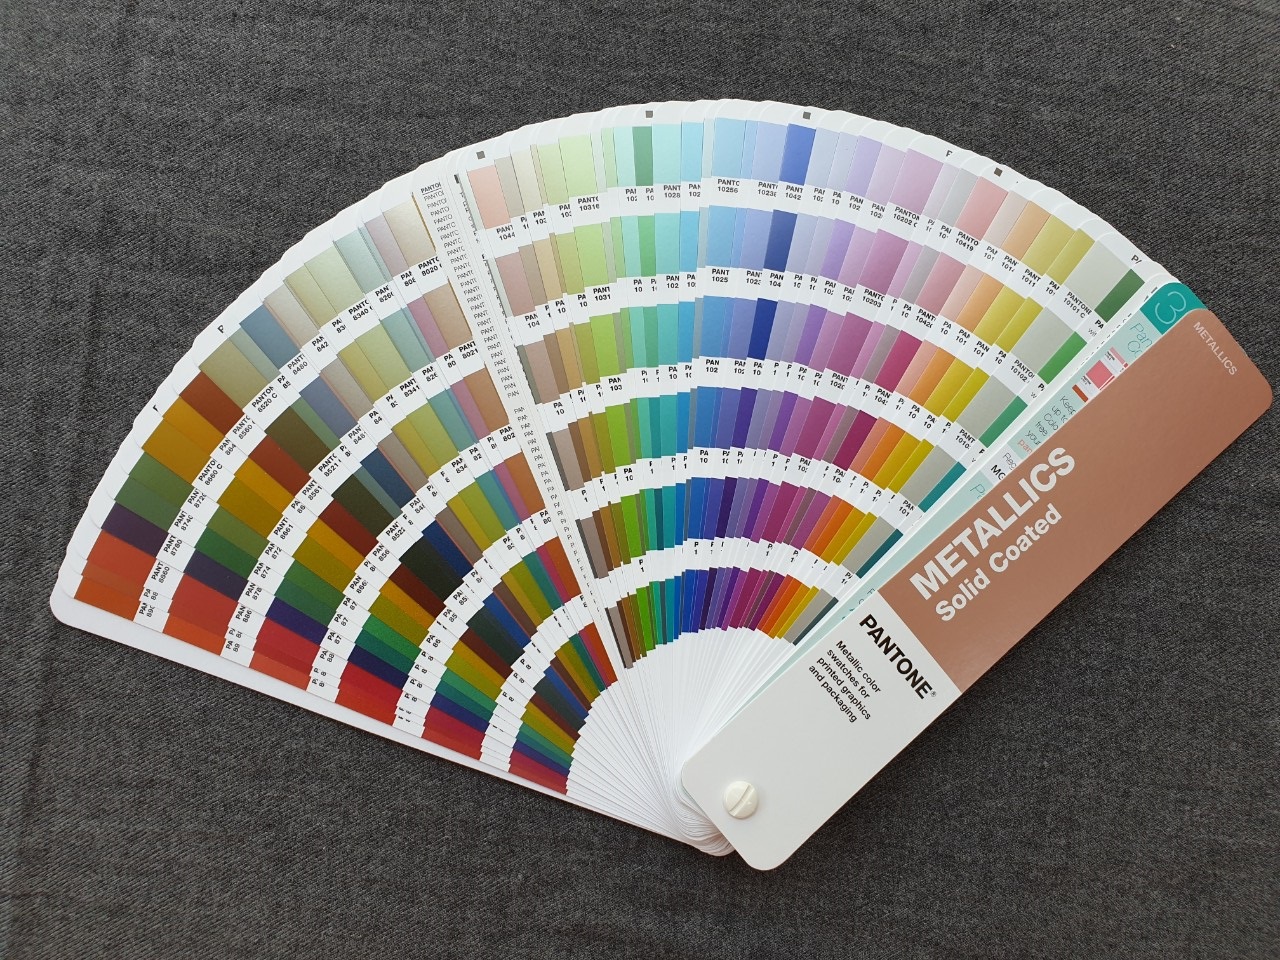 Bộ 1 thanh bảng màu Pantone C Metallics Guide GG1507A mới nhất năm 2020 - 655 màu pha PMS đầu 8 và 10 - có định lượng pha màu theo % - Ngành đồ họa in ấn - Nhập khẩu từ nhà máy PANTONE LLC tại Mỹ